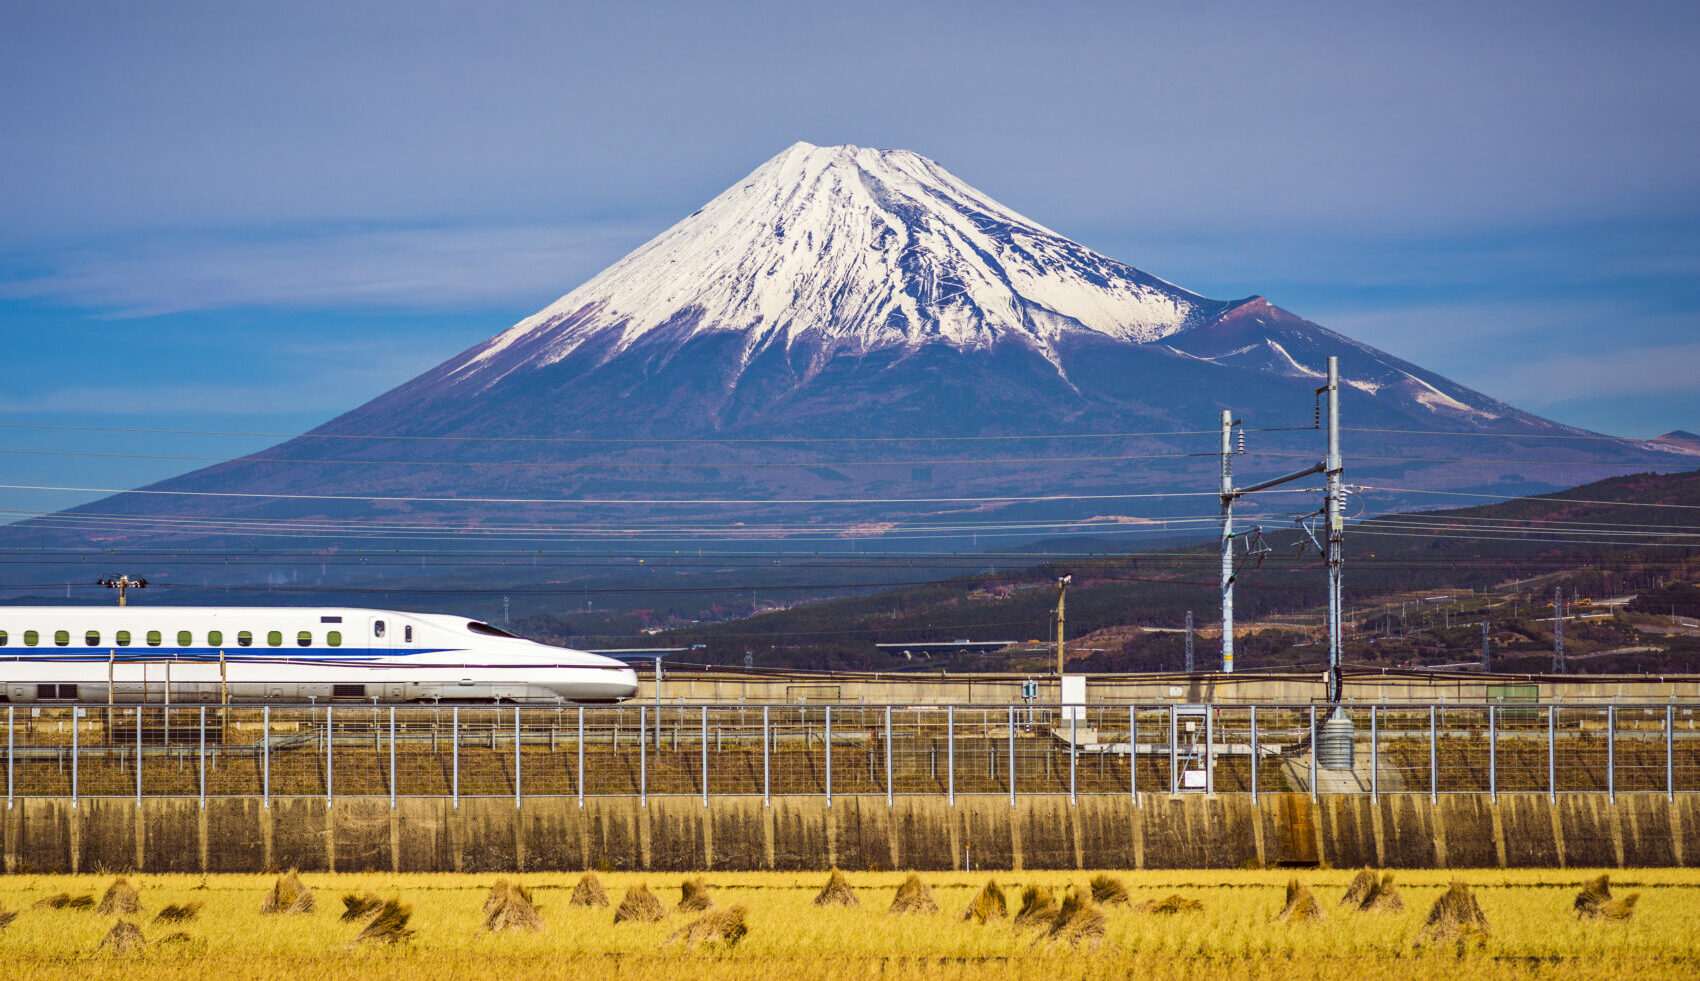 Bullet train passing Mount Fuji